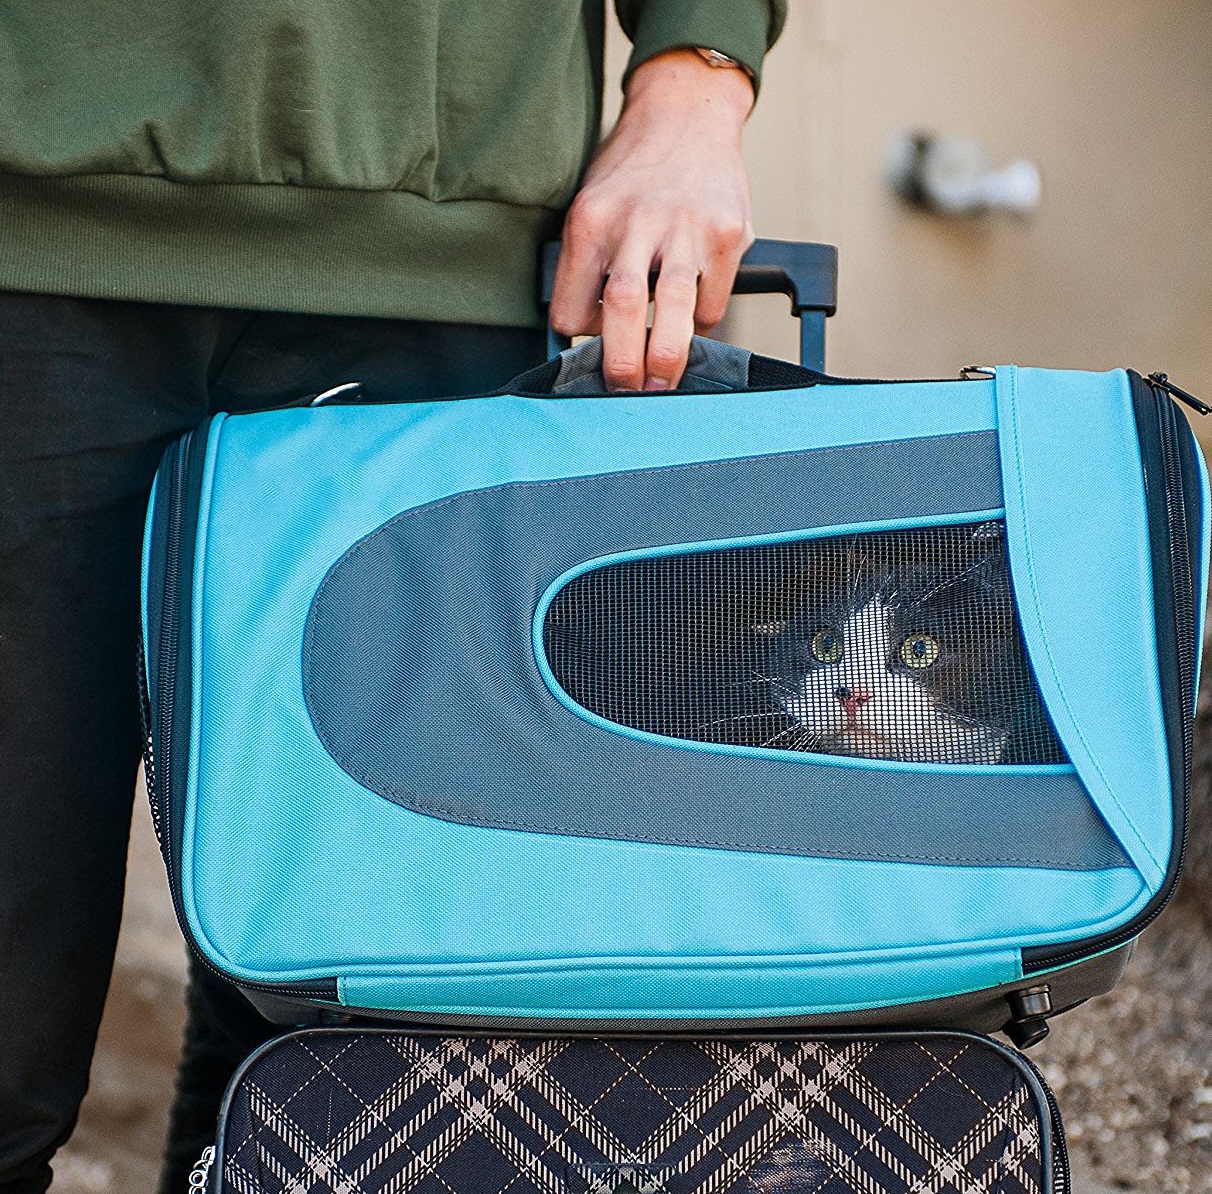 Portable portatif de chat de petits chiens danimal familier de voyage de chien avec le rembourrage confortable a linterieur du sac danimal familier